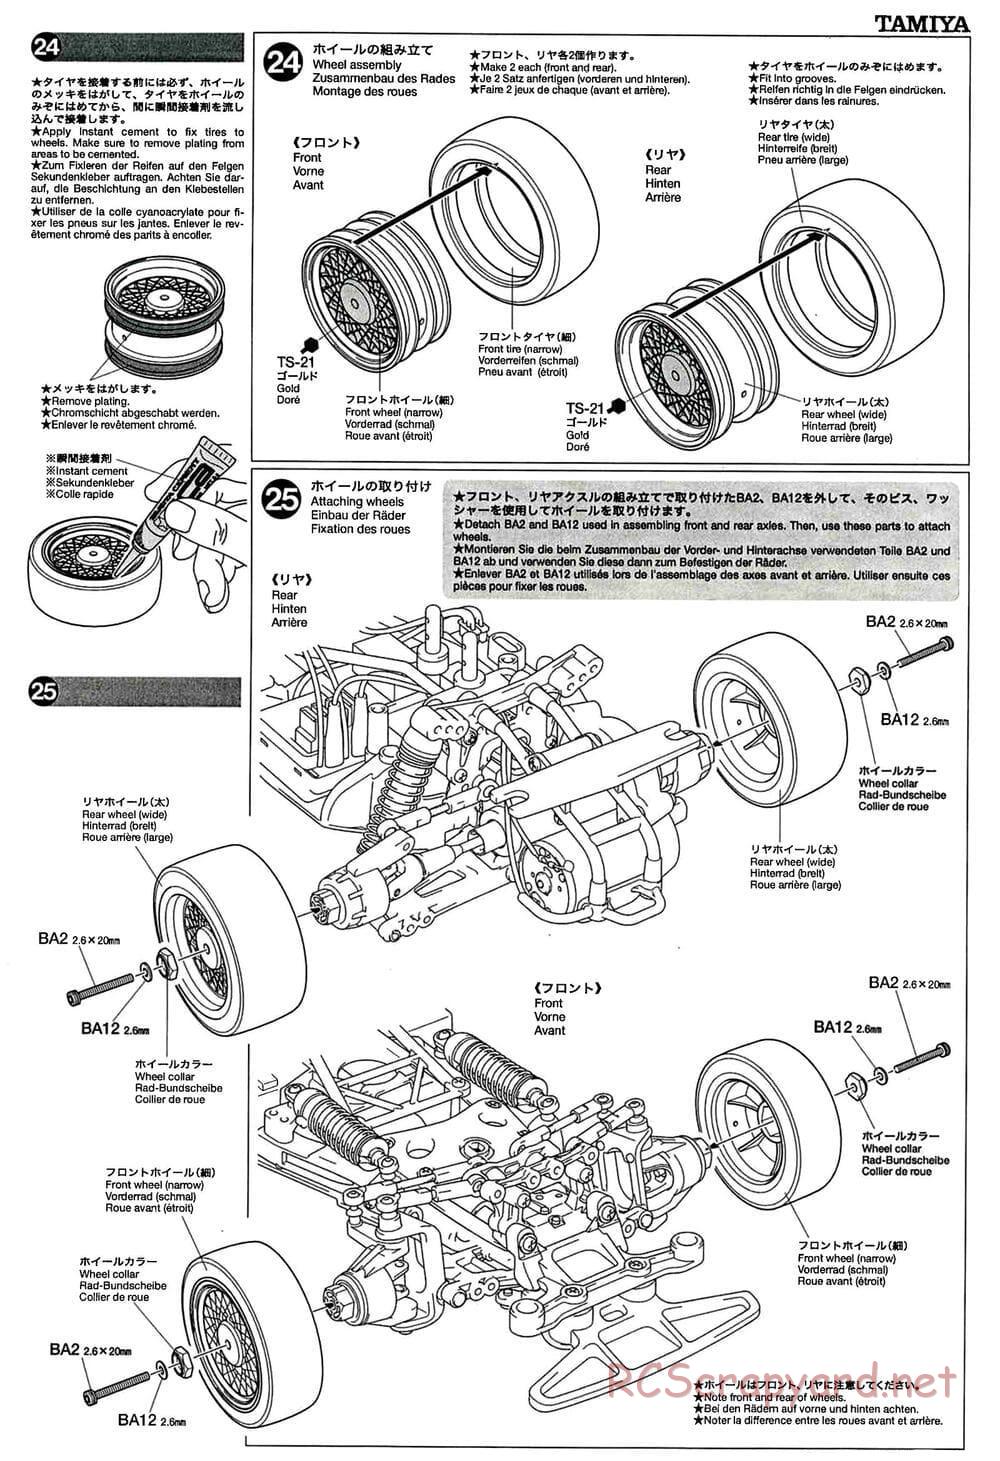 Tamiya - GT-01 Chassis - Manual - Page 15